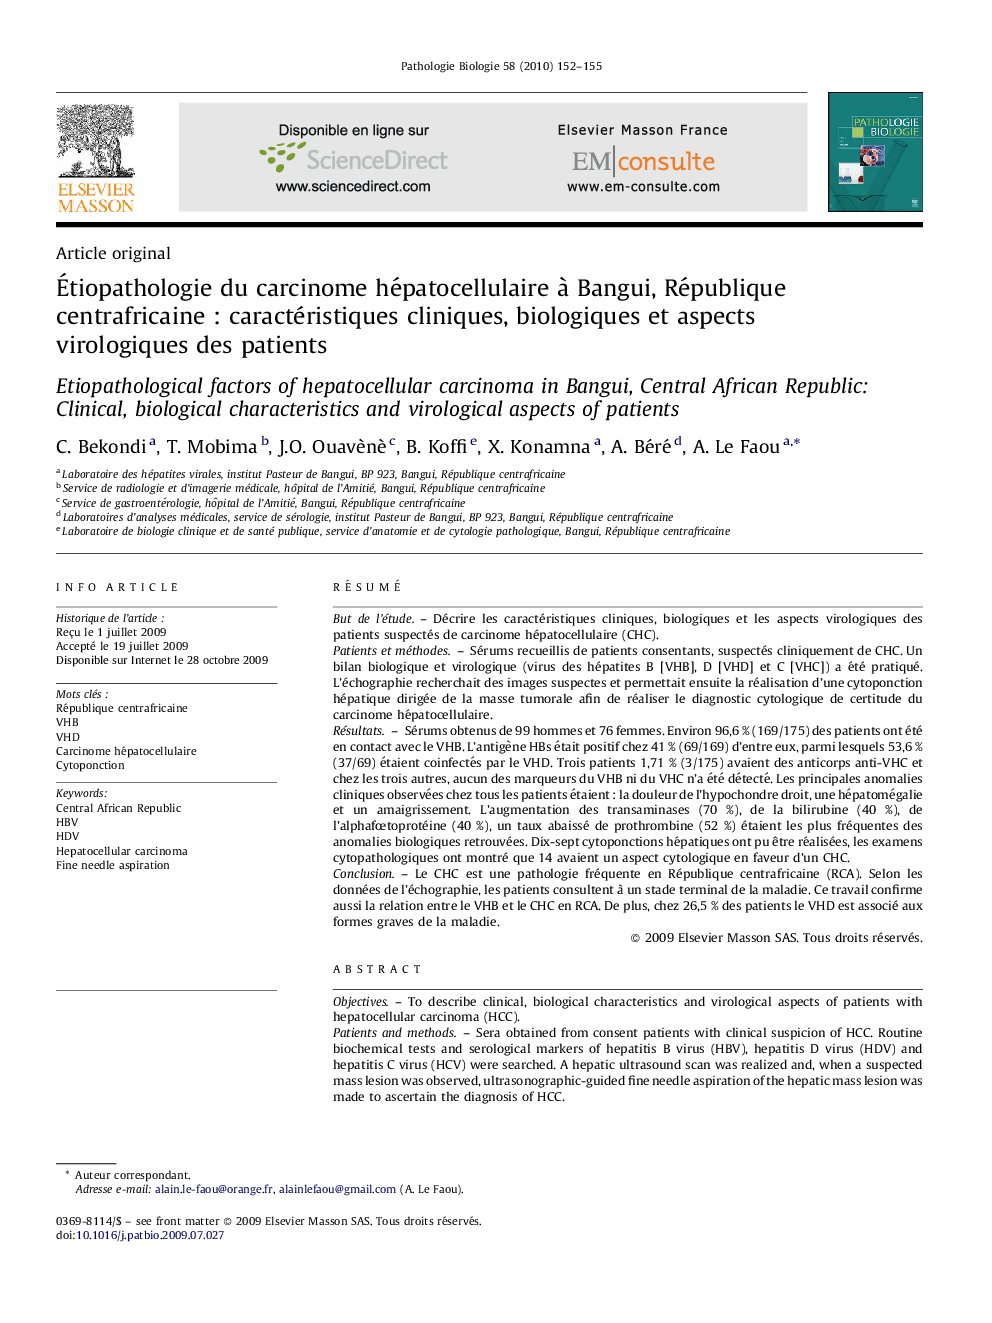 Étiopathologie du carcinome hépatocellulaire à Bangui, République centrafricaine : caractéristiques cliniques, biologiques et aspects virologiques des patients